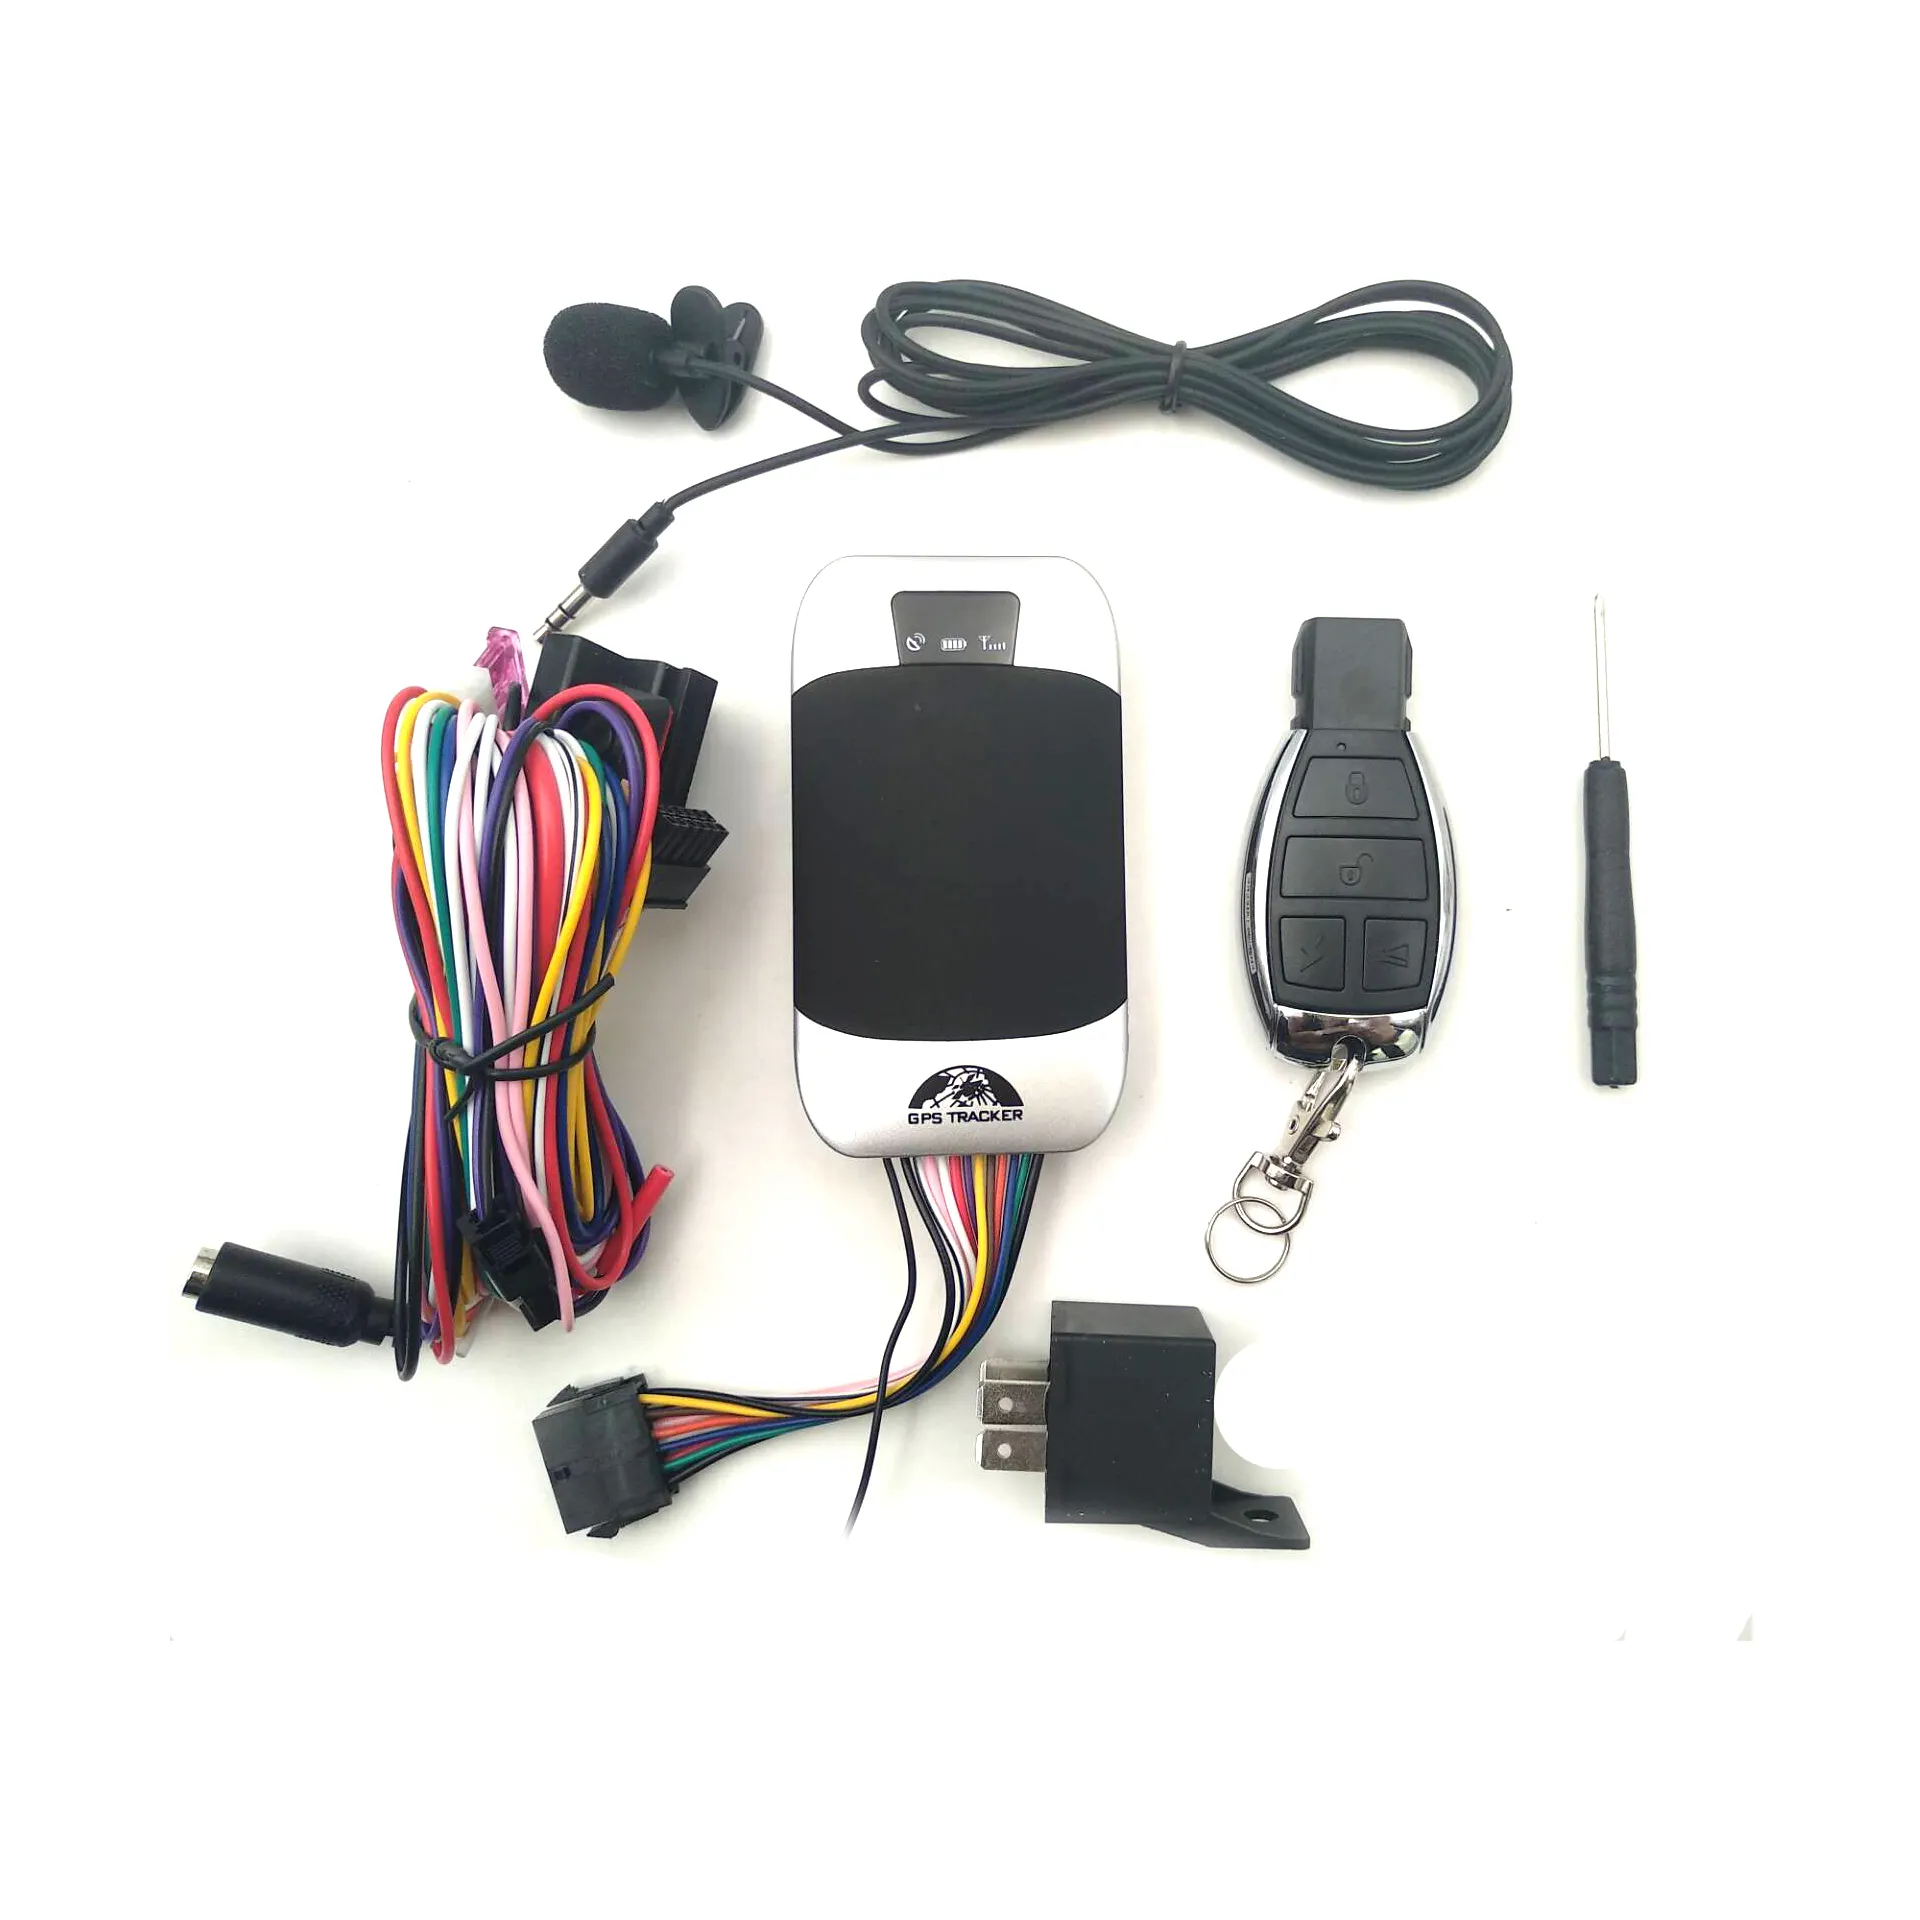 Rastreador GPS impermeable para coche y motocicleta, aplicación de seguimiento, 2019G, 303